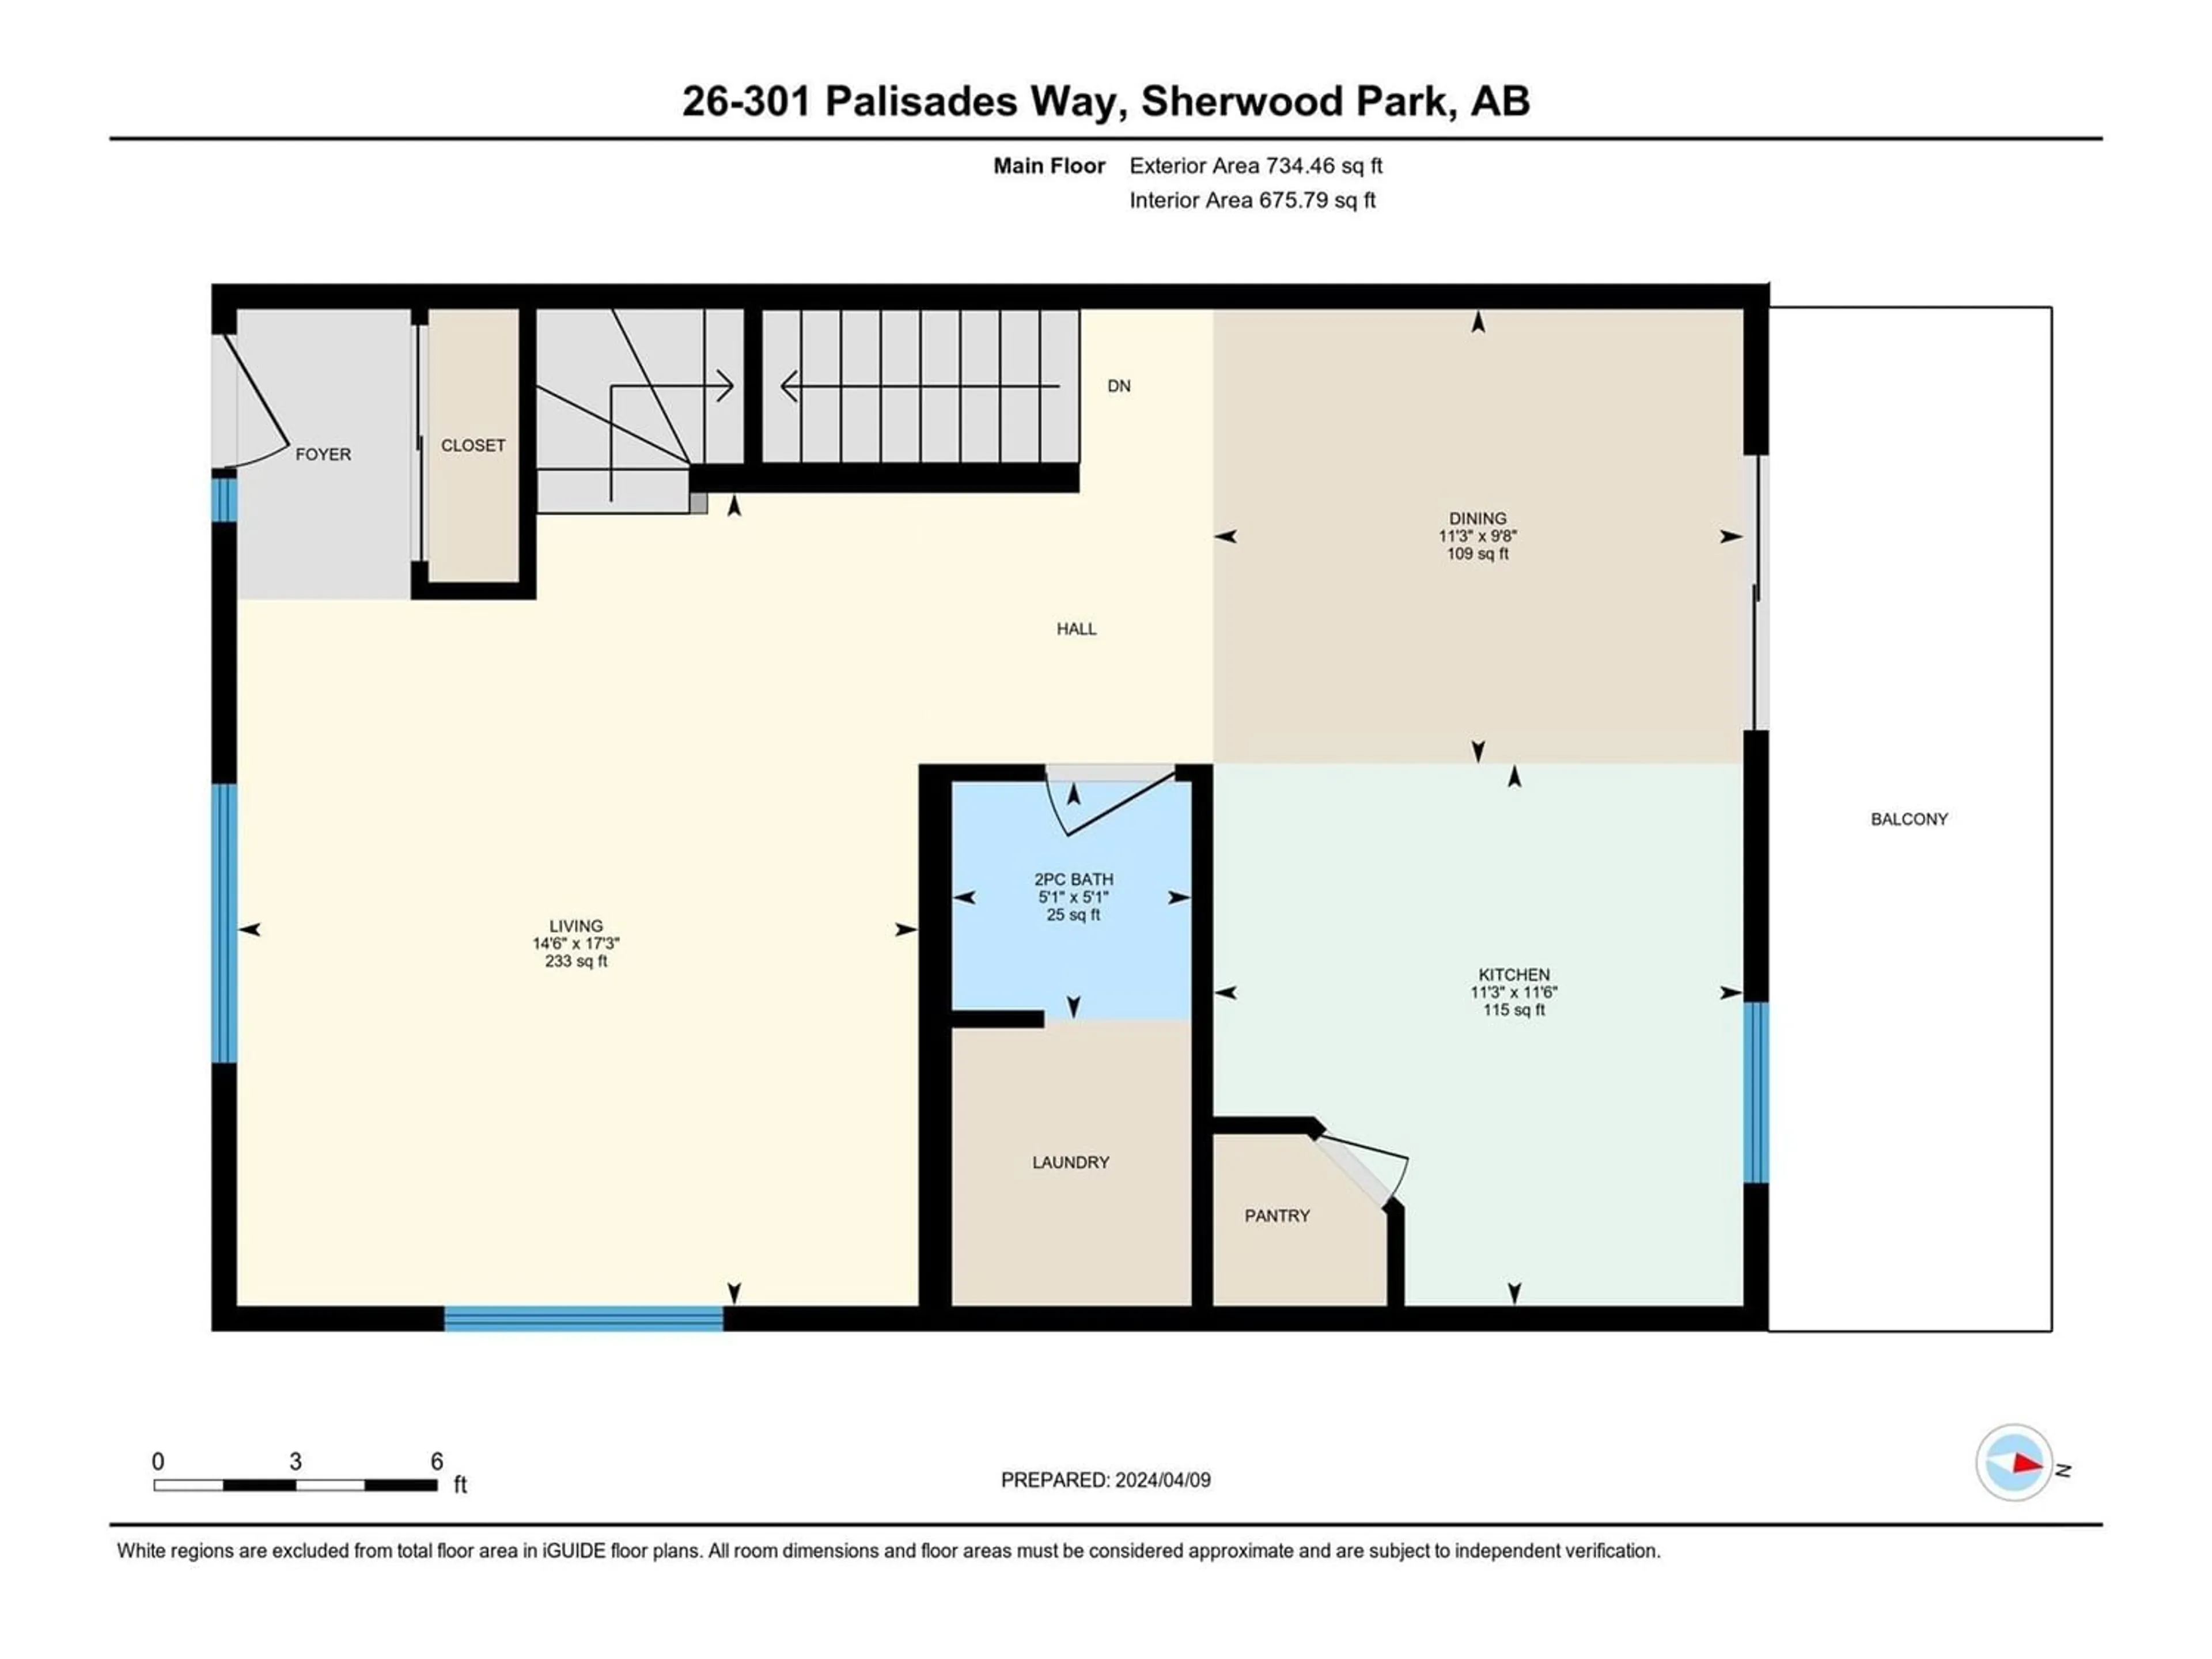 Floor plan for #26 301 PALISADES WY, Sherwood Park Alberta T8H0N3